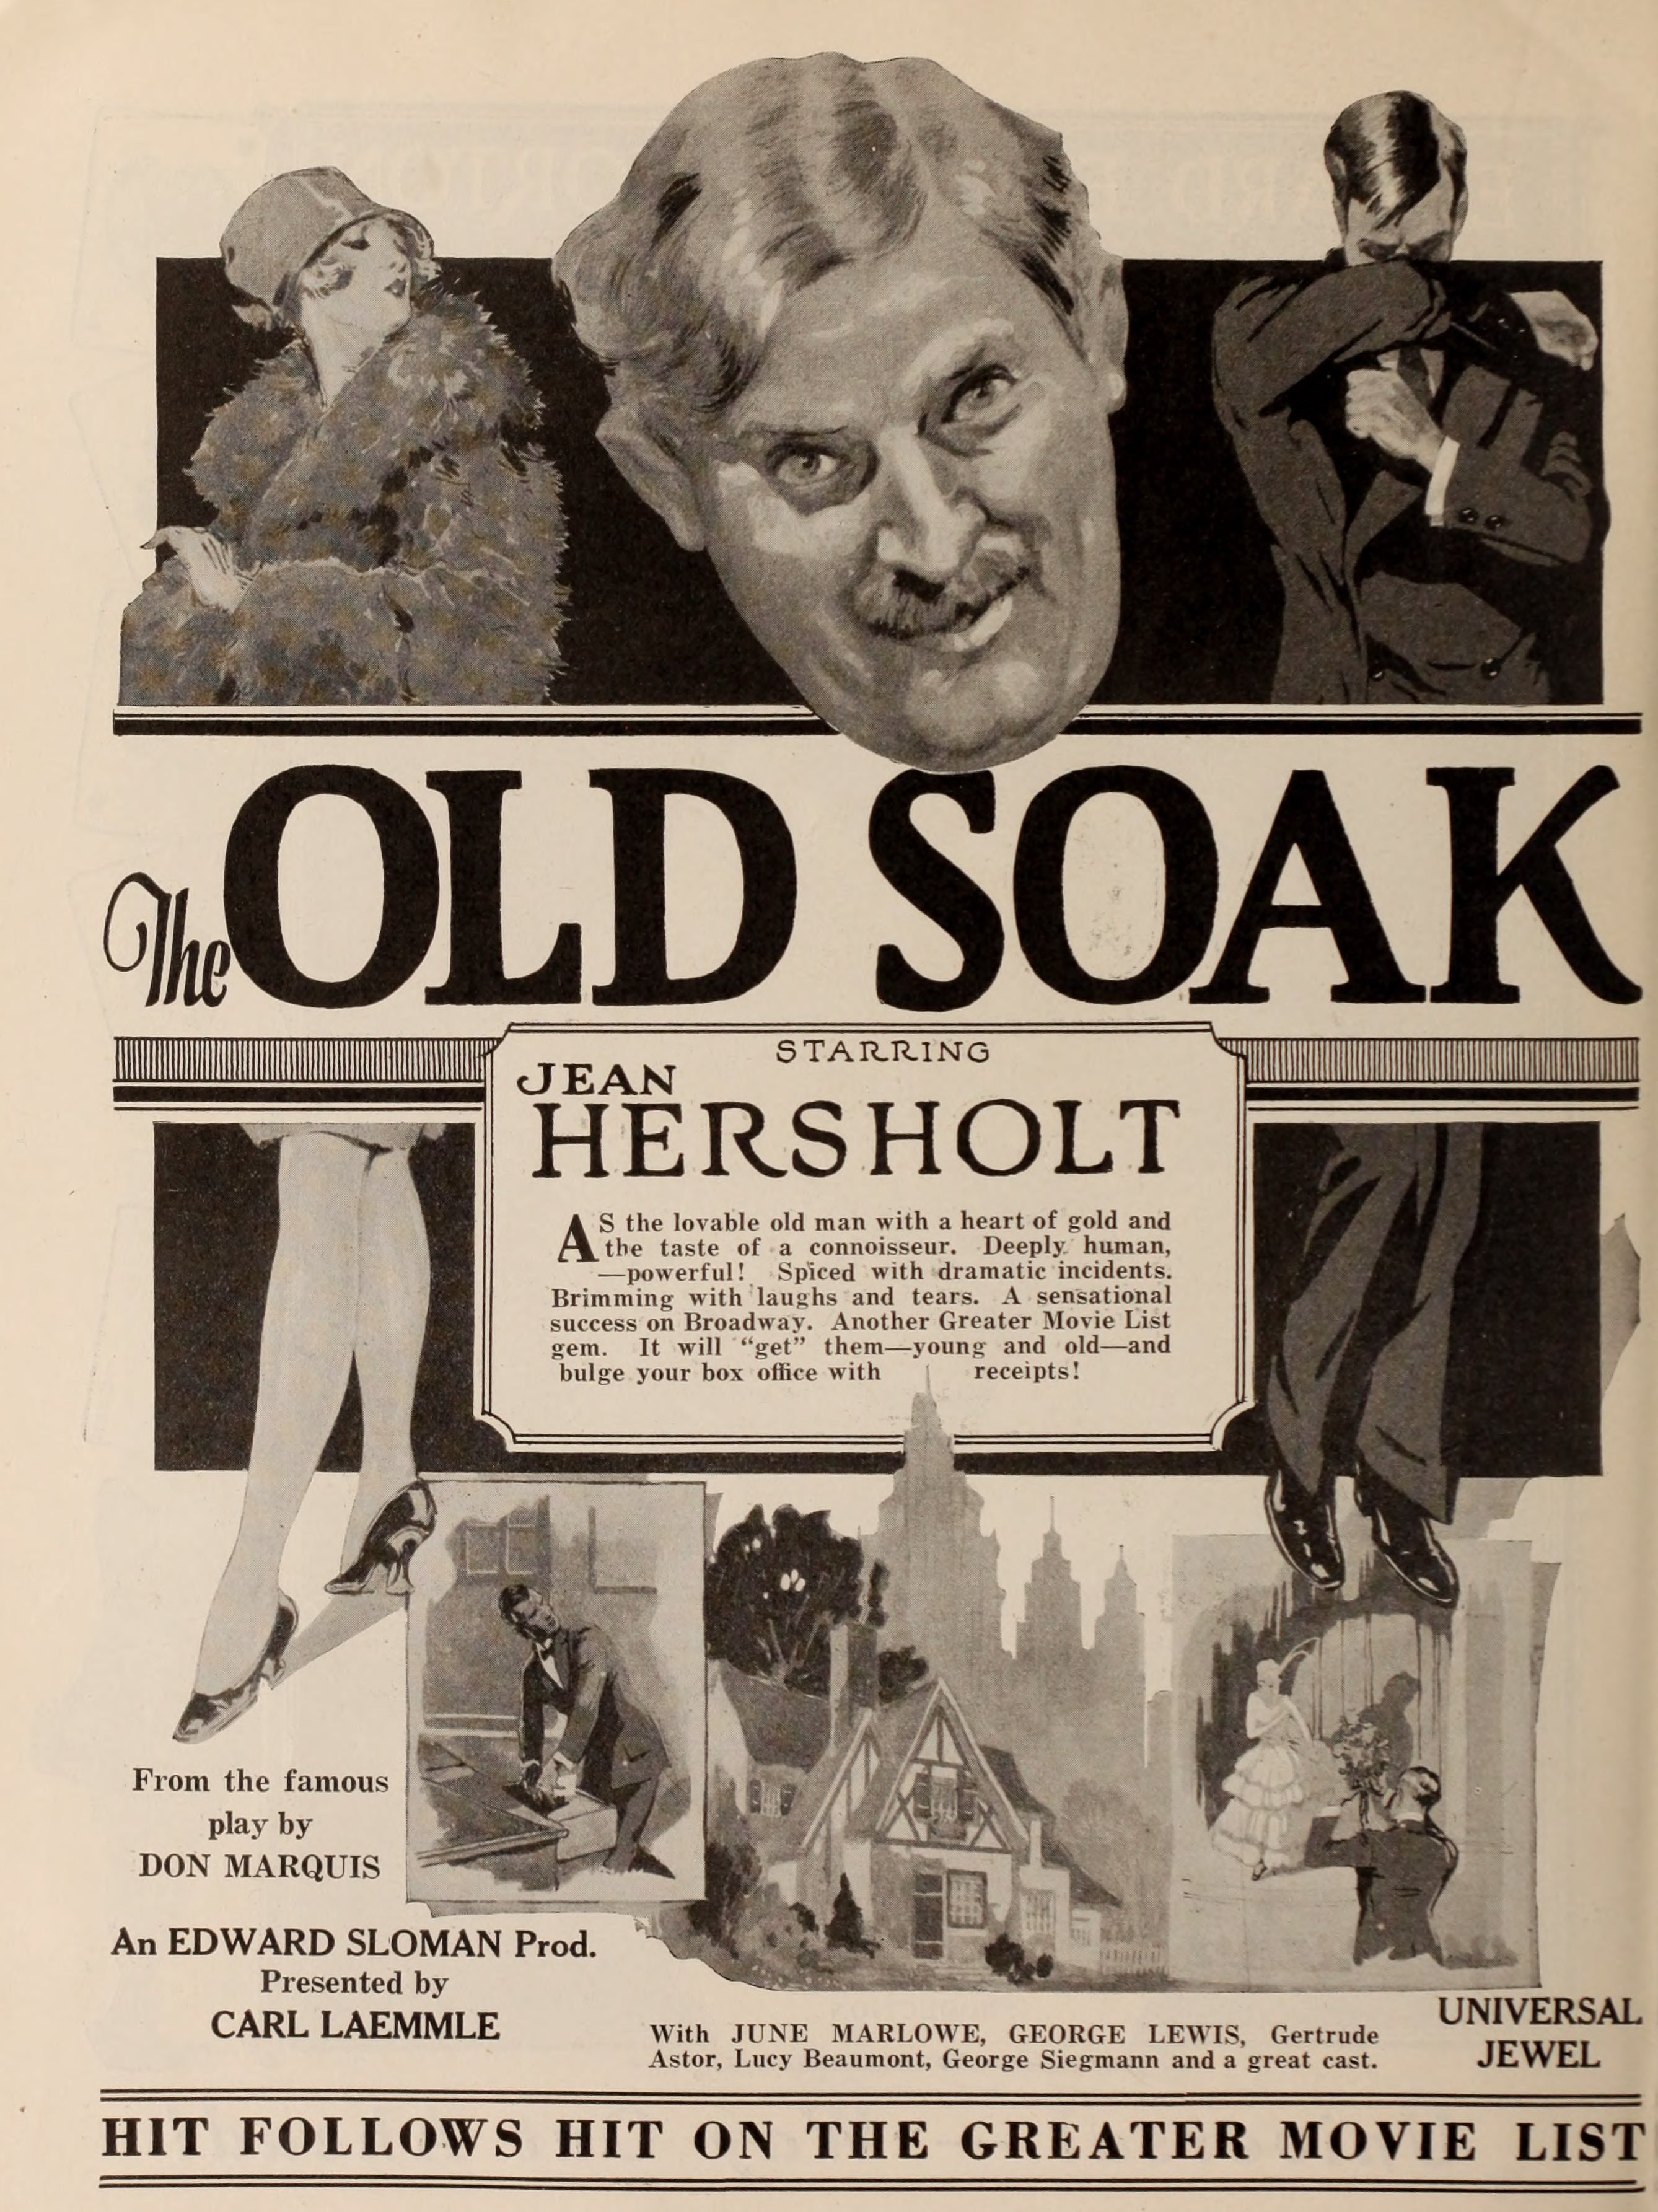 The Old Soak (1926) | www.vintoz.com